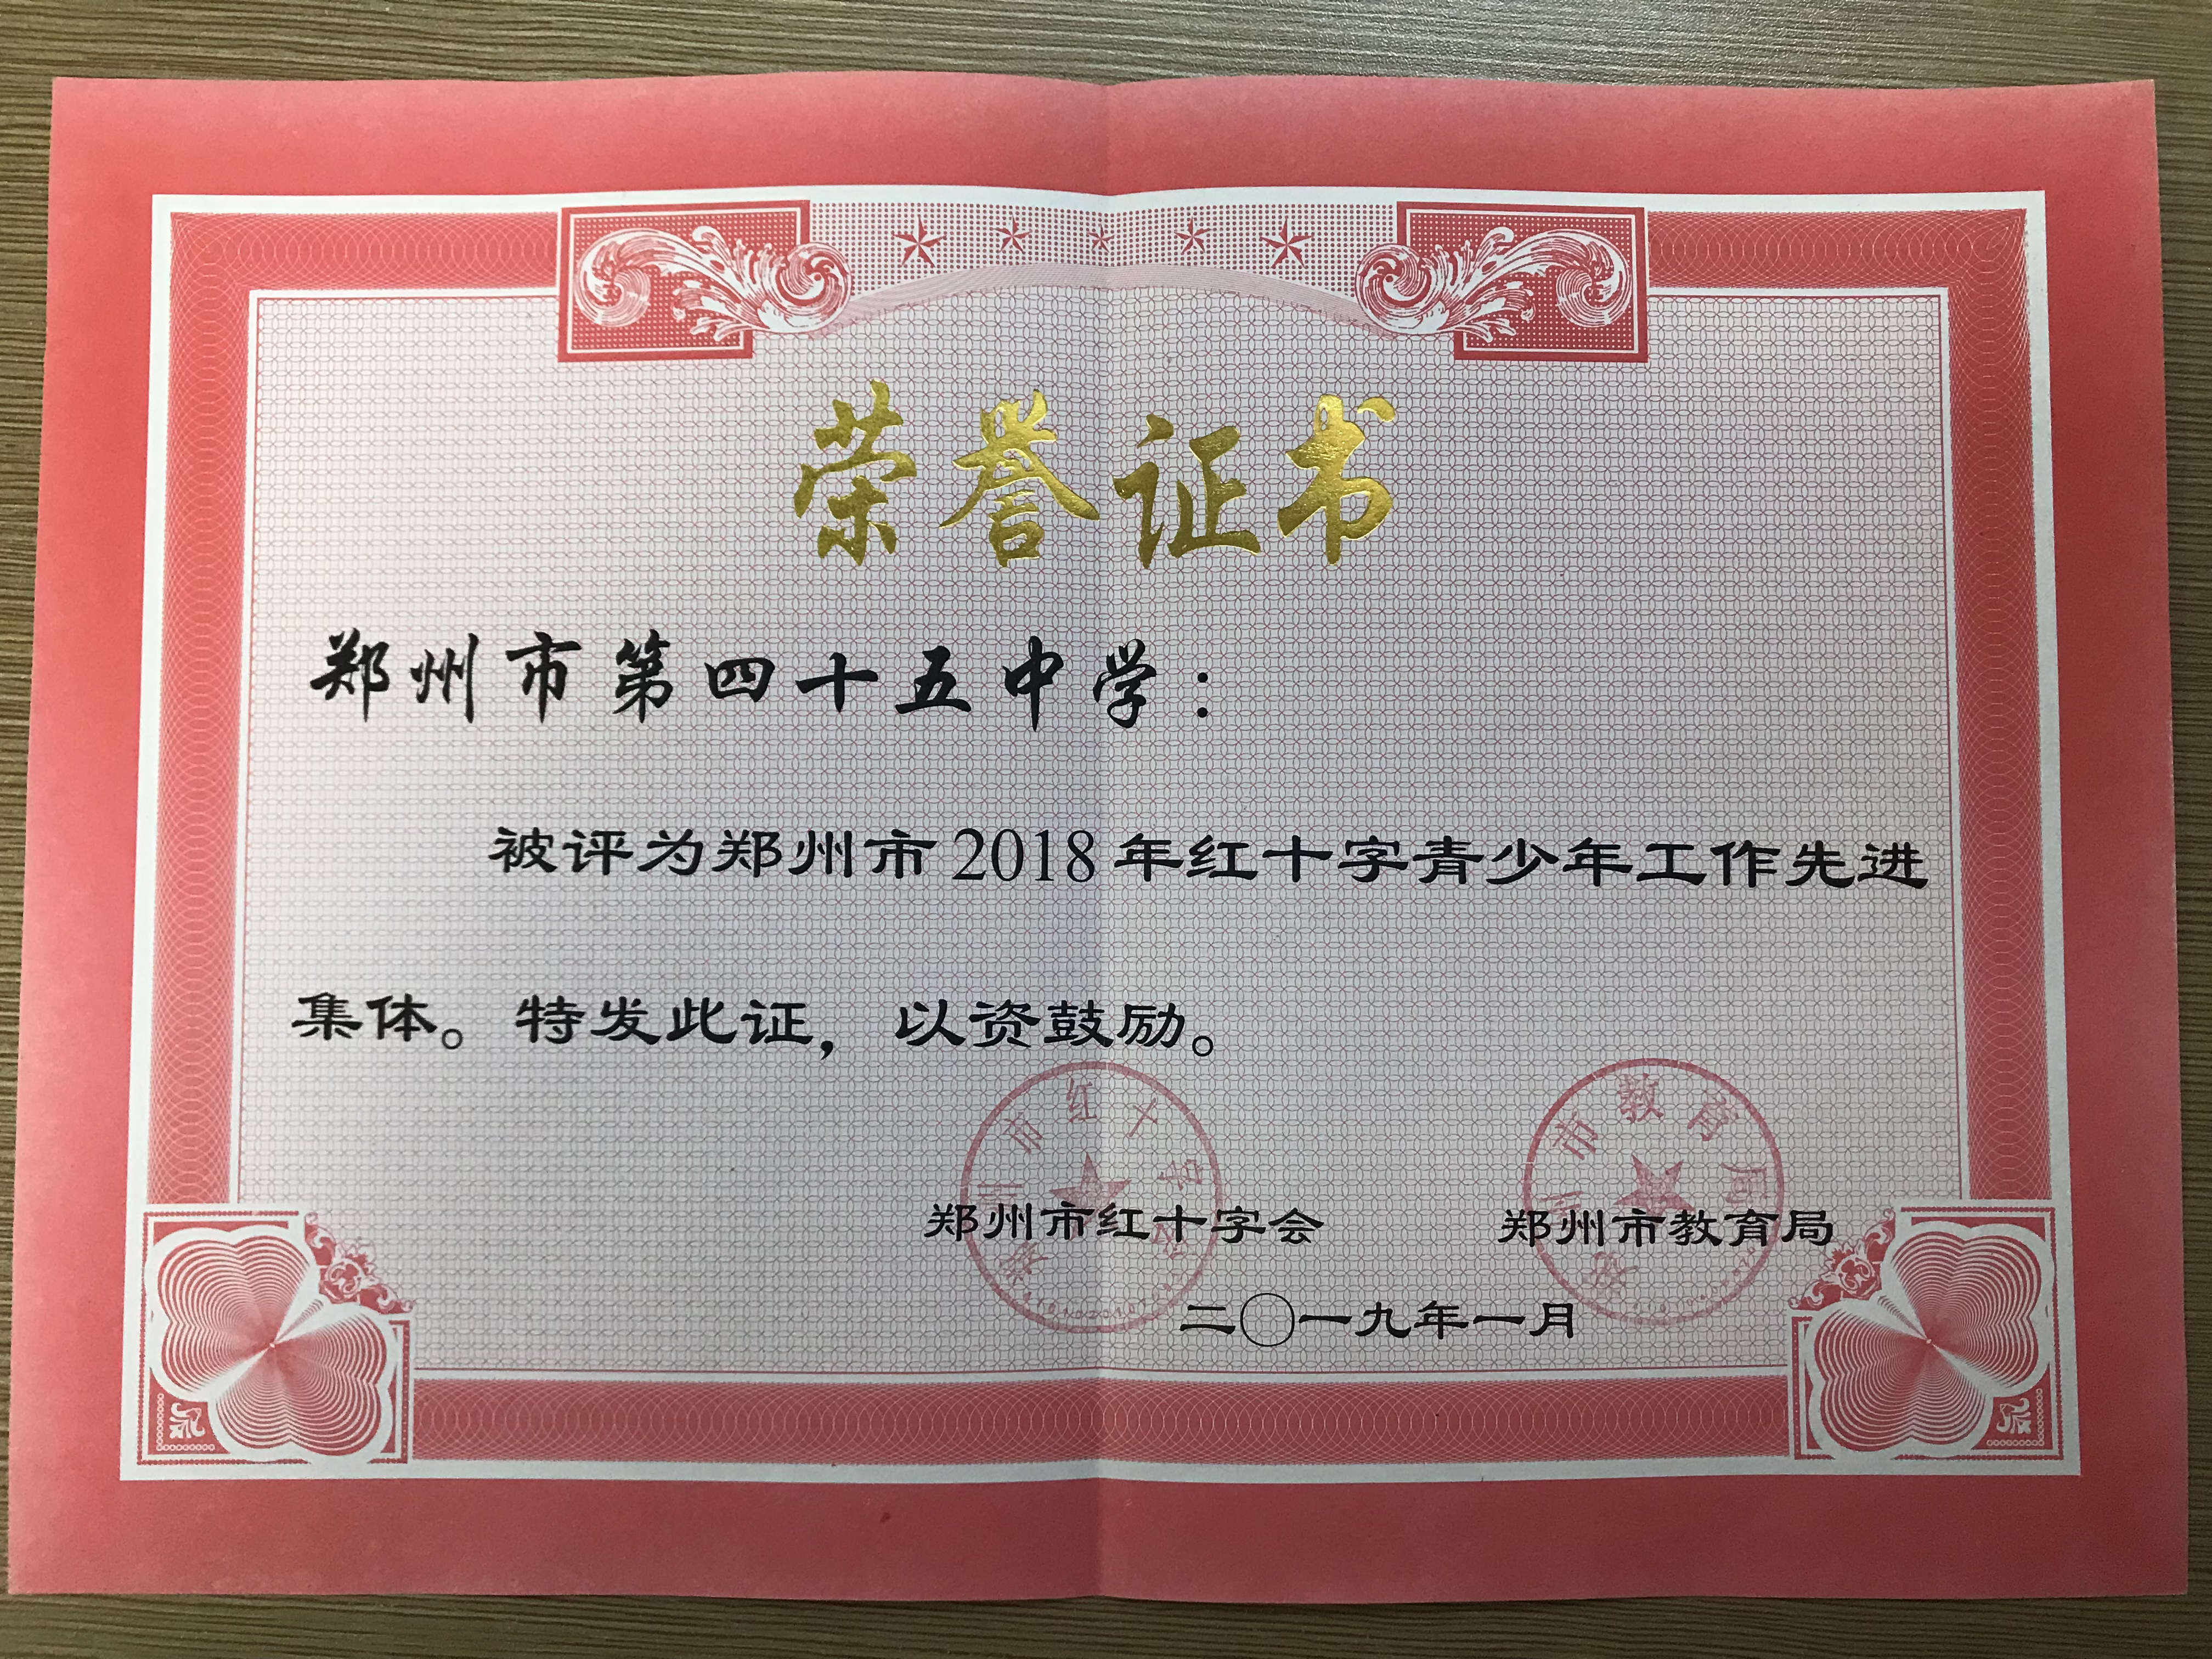 郑州45中蝉联郑州市2018年红十字青少年工作先进集体荣誉称号